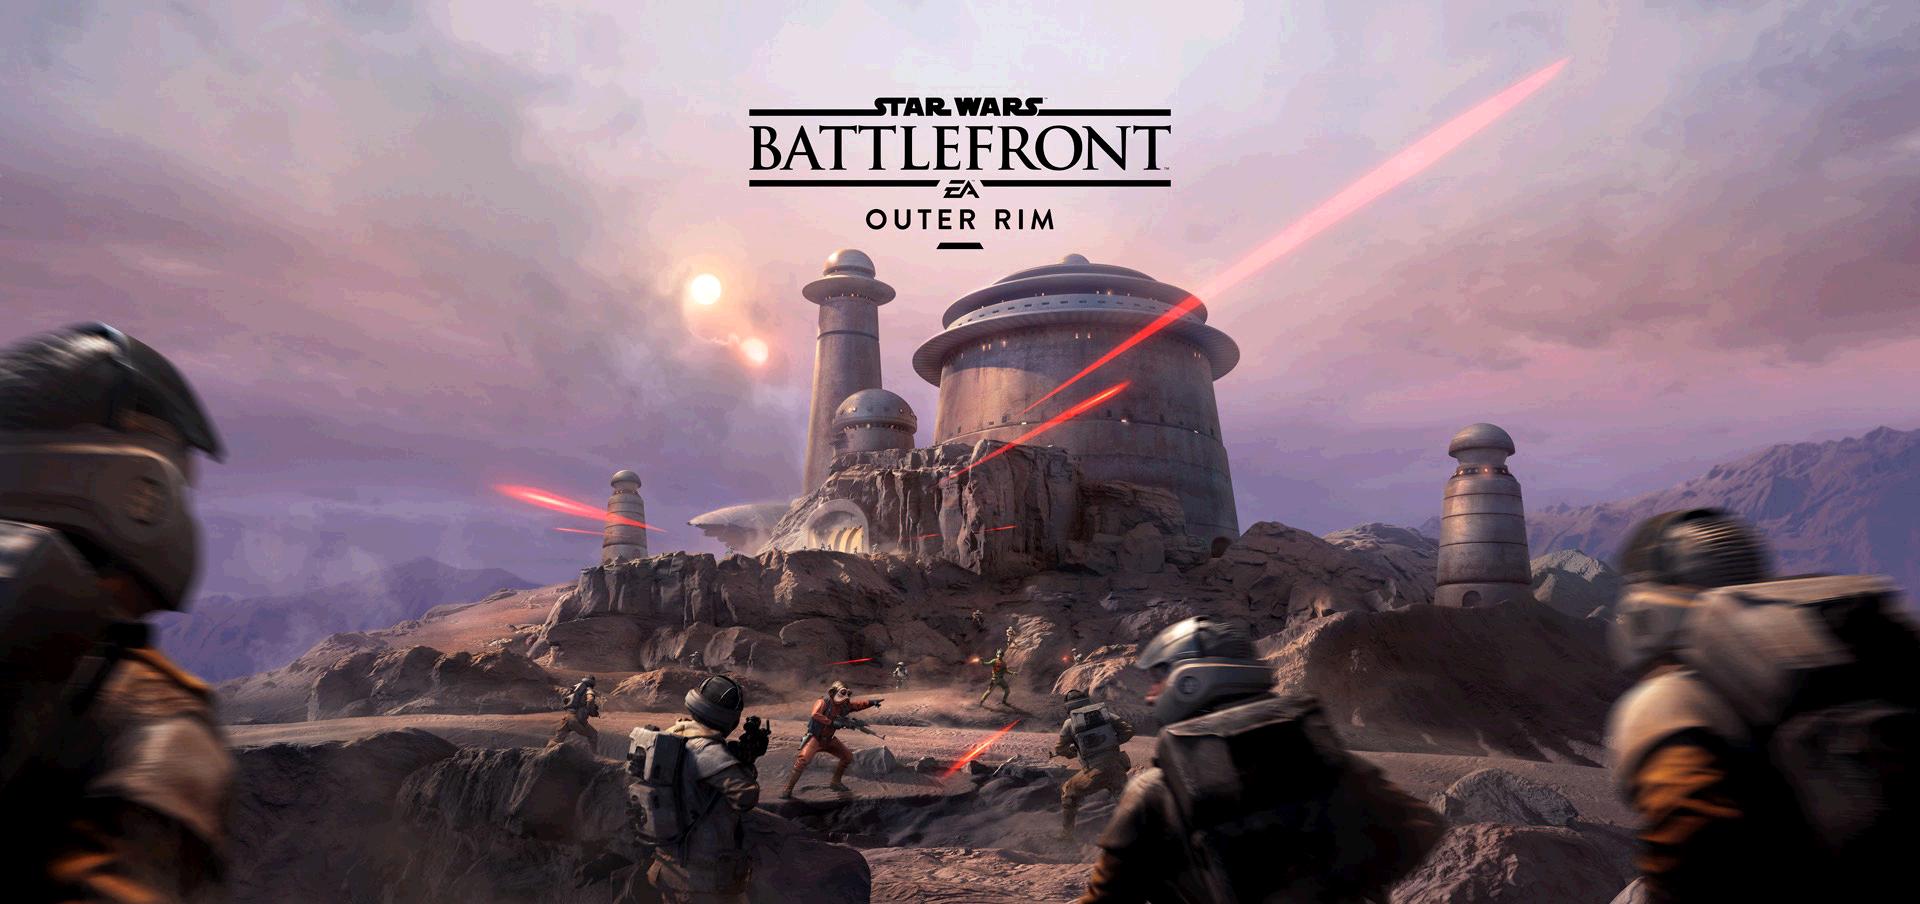 Video Game Star Wars Battlefront 2015 1920x904